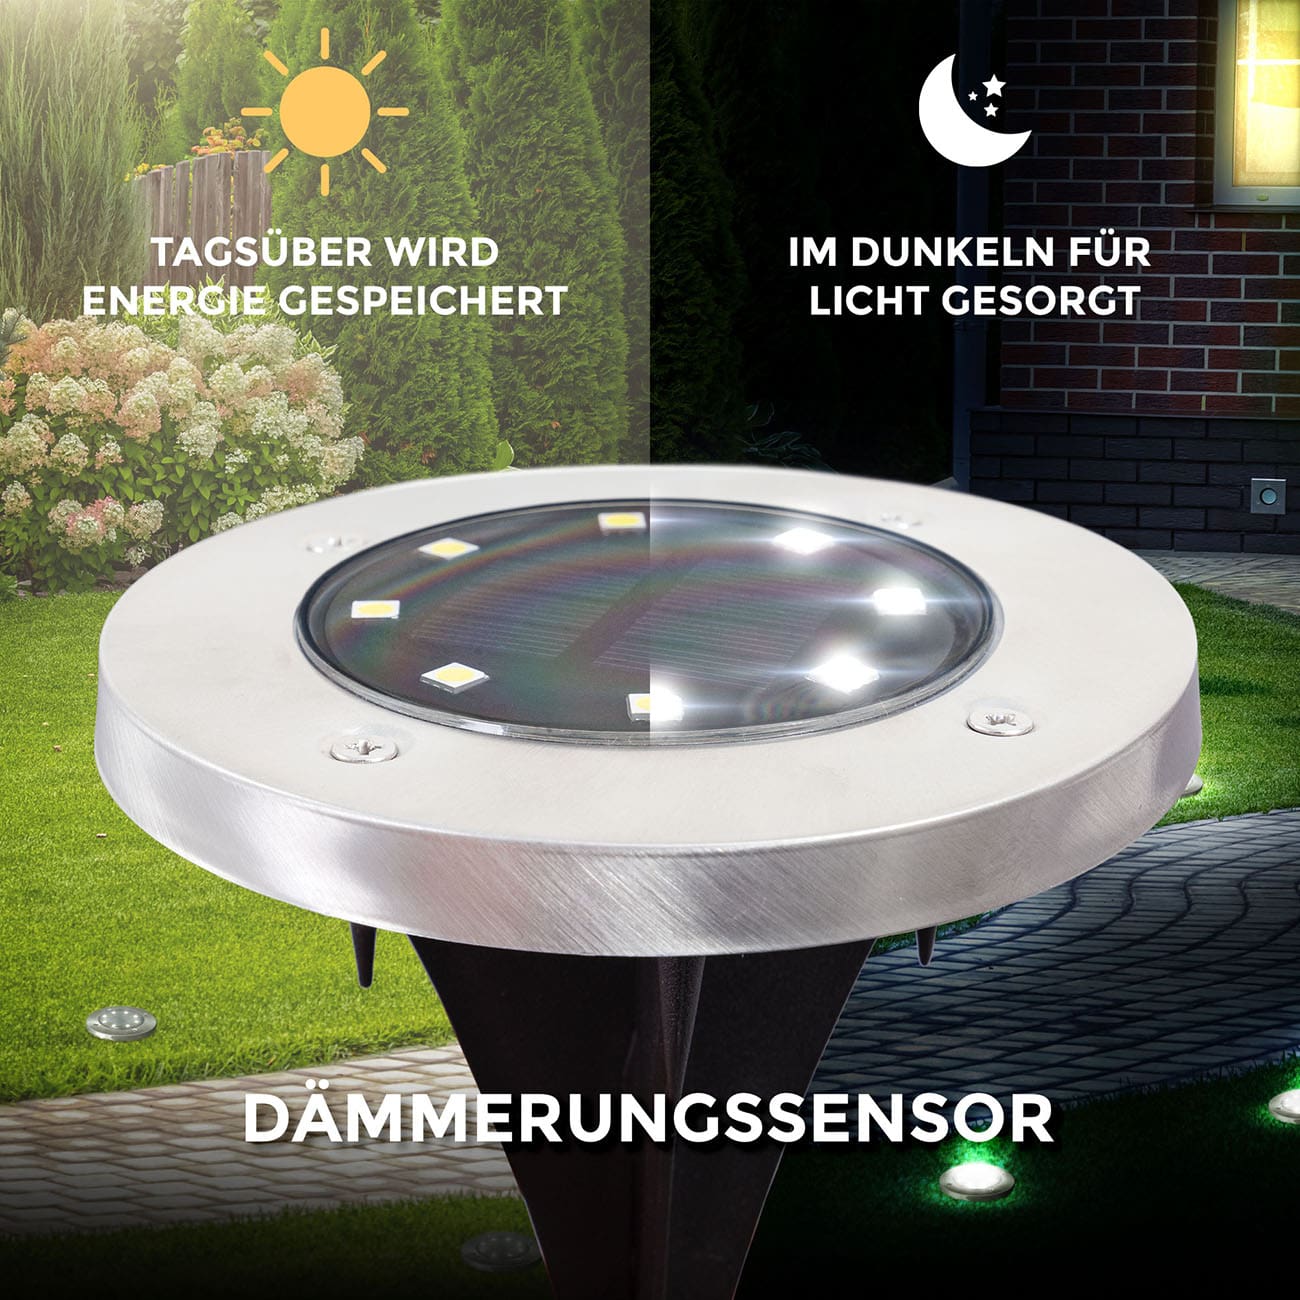 Solar LED Bodenlampen - 8er-Set - Gartenbeleuchtung  Ø11,9 cm inkl Erdspieß Dämmerungssensor IP65 wasserdicht | Edelstahl-Schwarz - 5